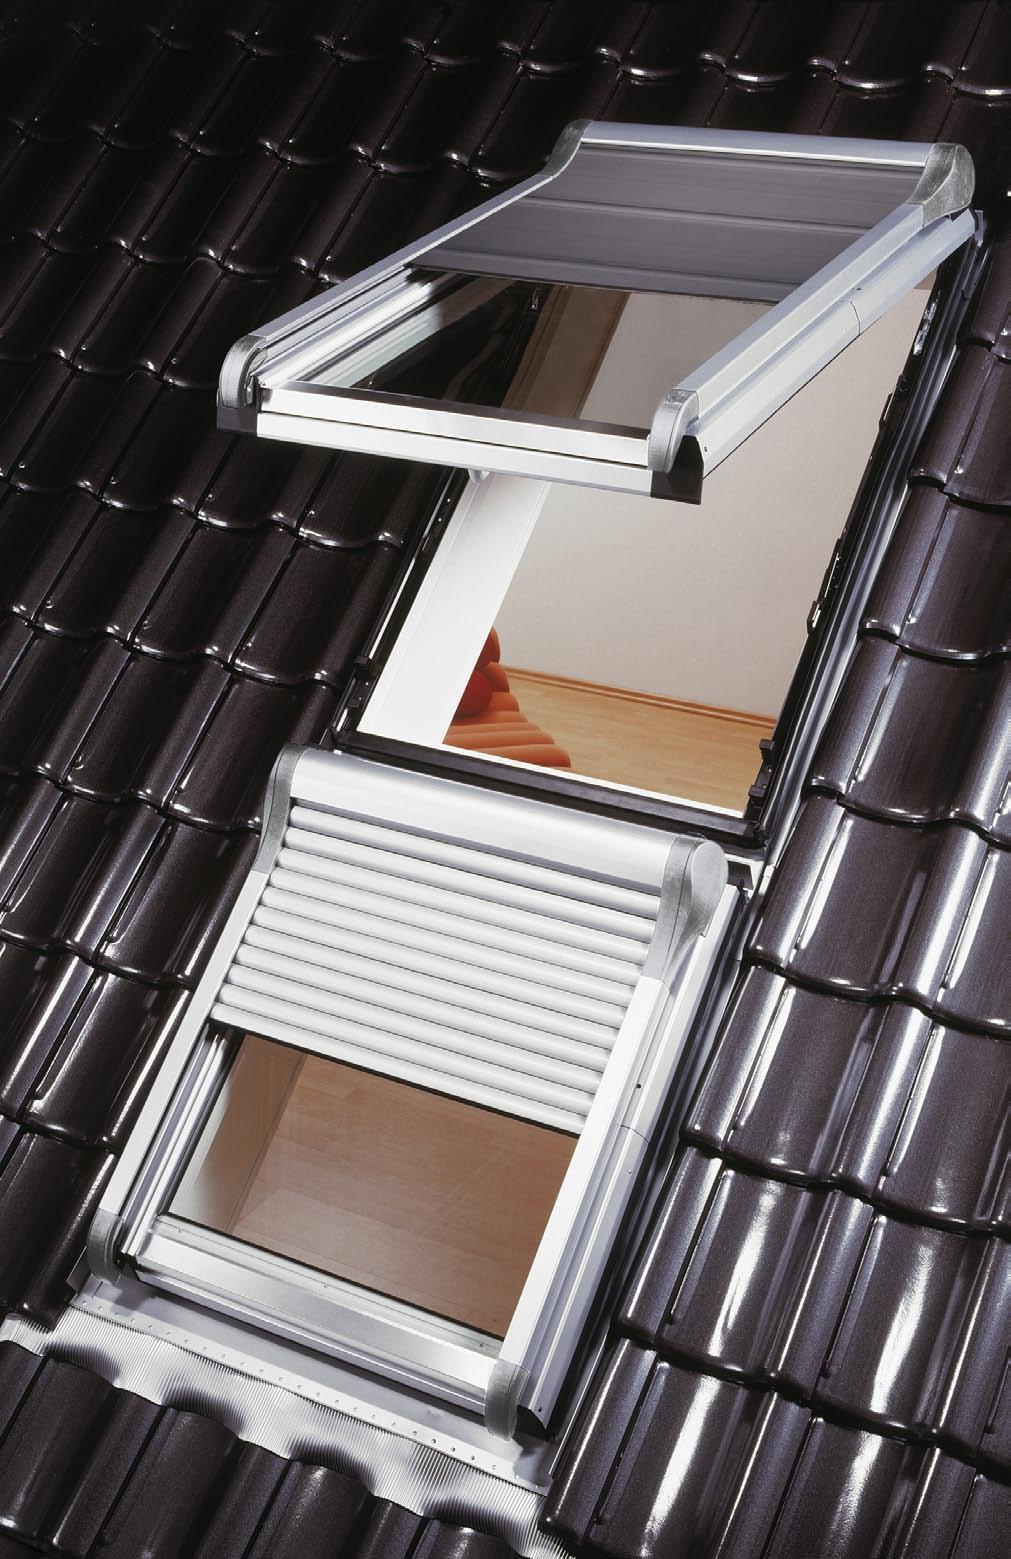 Dachfenster-Verschattung der besonderen Art. Immer mehr Hausbesitzer nutzen den ausgebauten Dachraum, um zusätzliche Wohnfläche zu erhalten. Hier kommt dem Tageslicht eine wichtige Stellung zu.